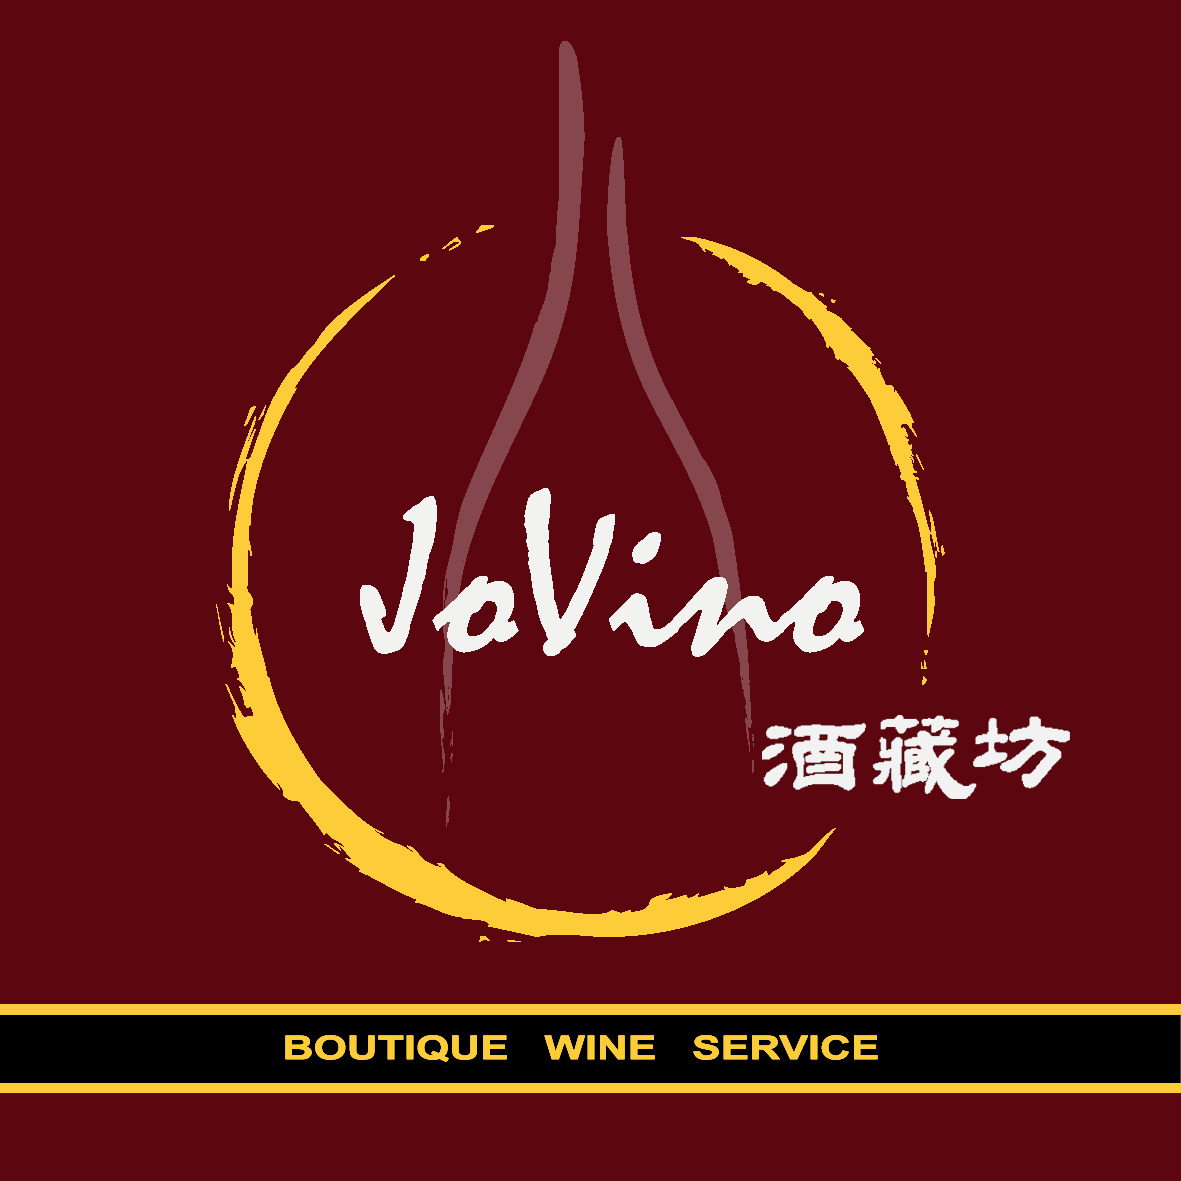 10月30日JoVino酒藏坊顶级美国俄勒冈黑皮诺品尝会